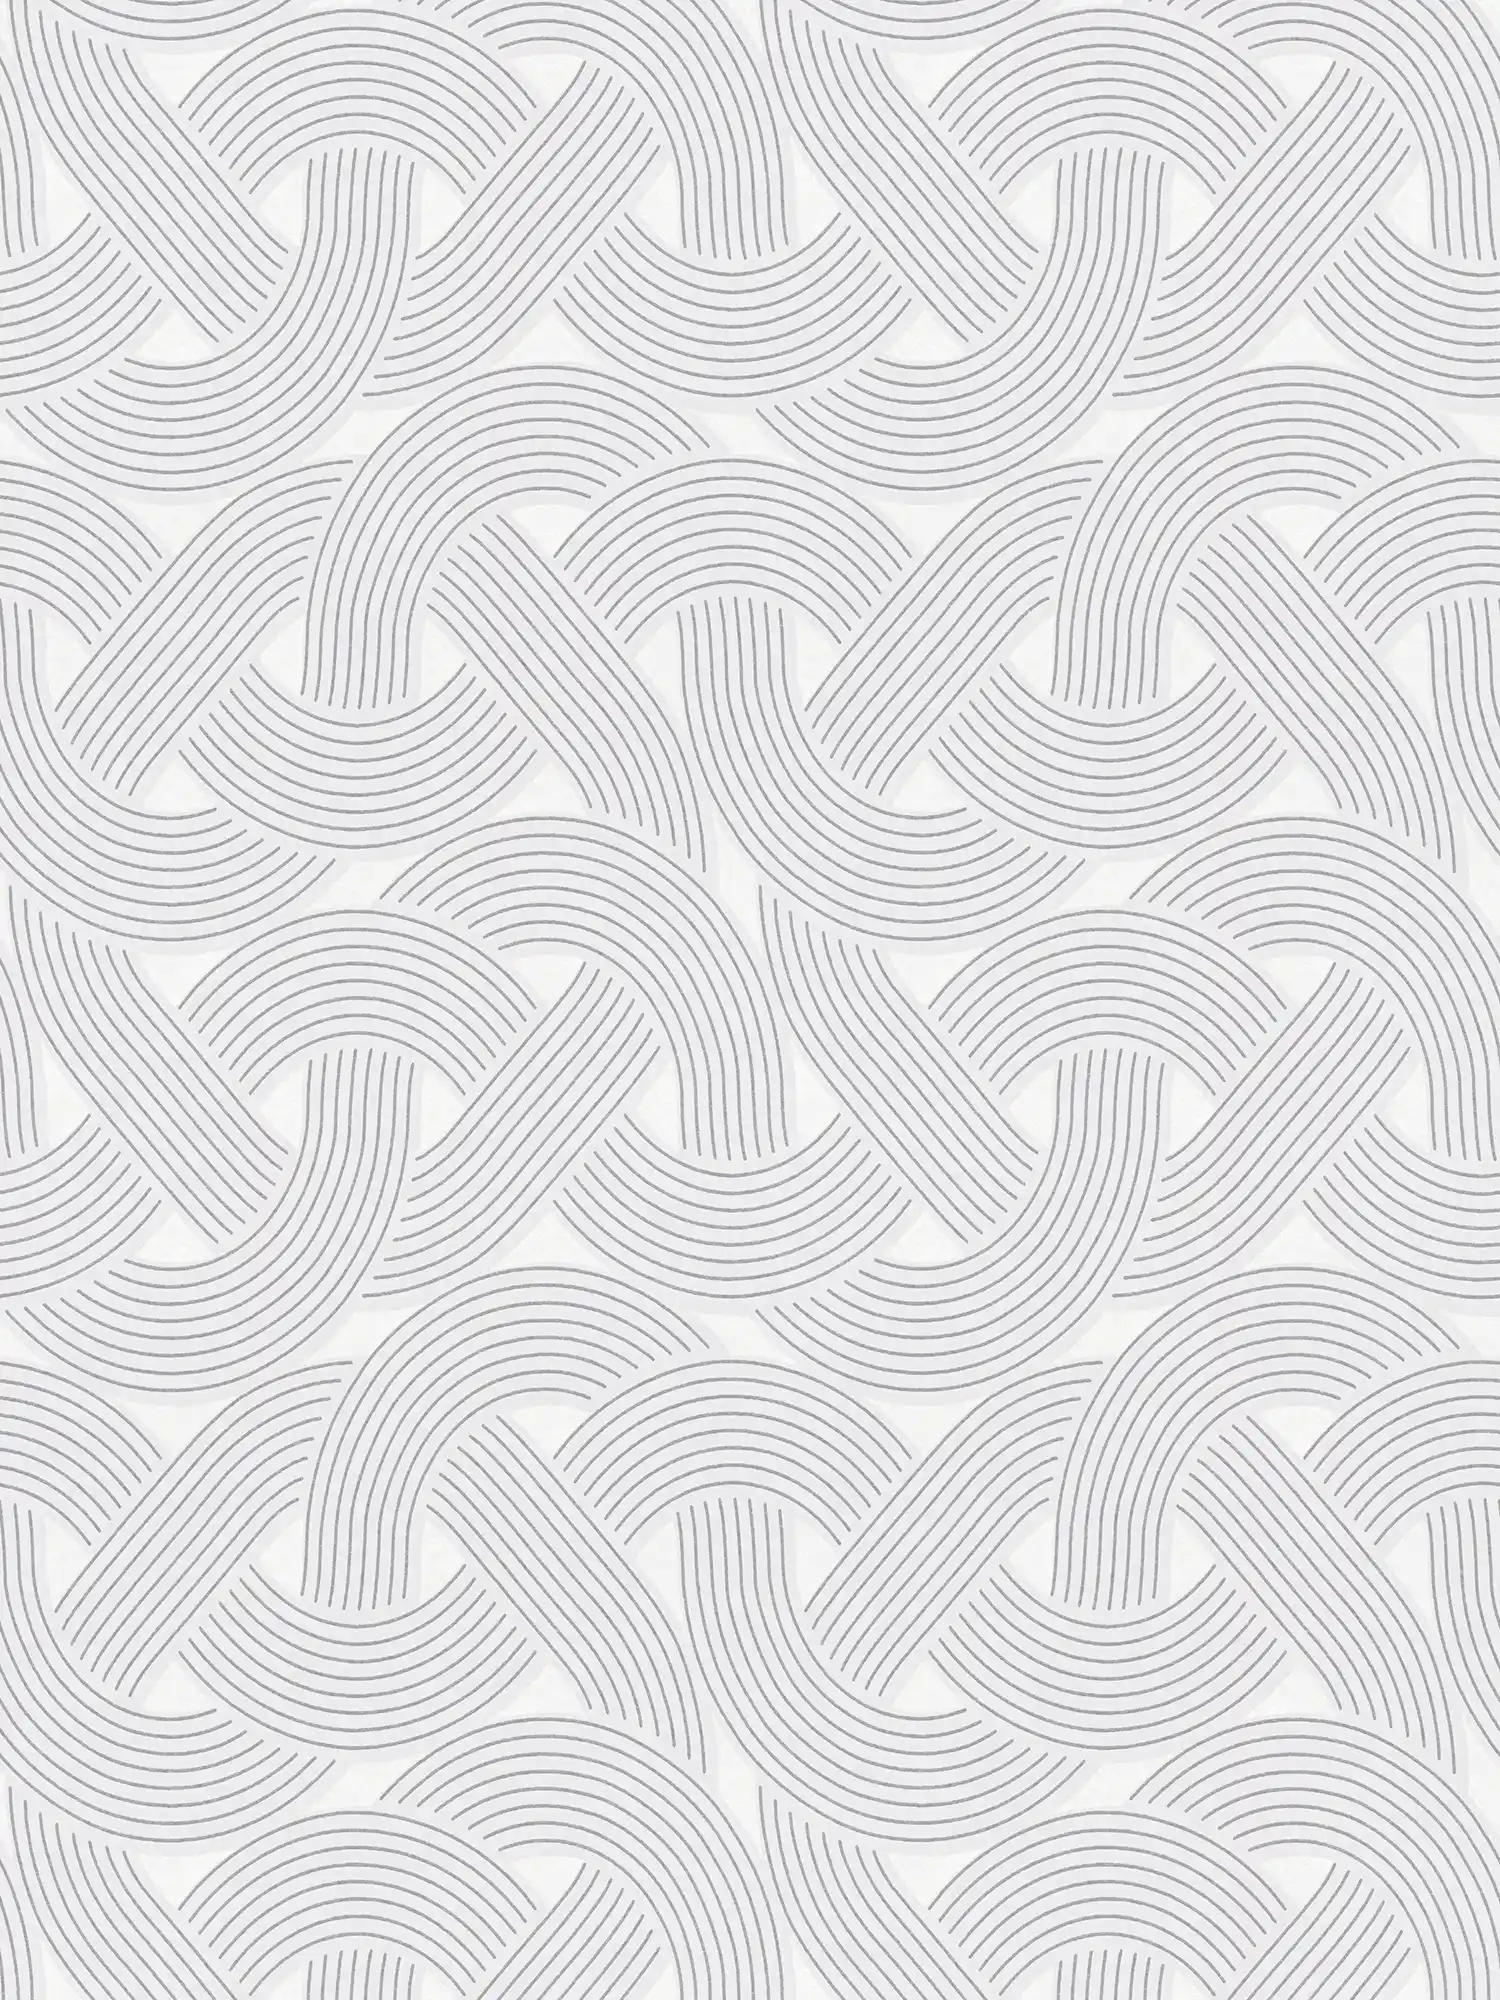 Vliestapete im graphischen Linienmuster – Grau, Silber, Weiß
